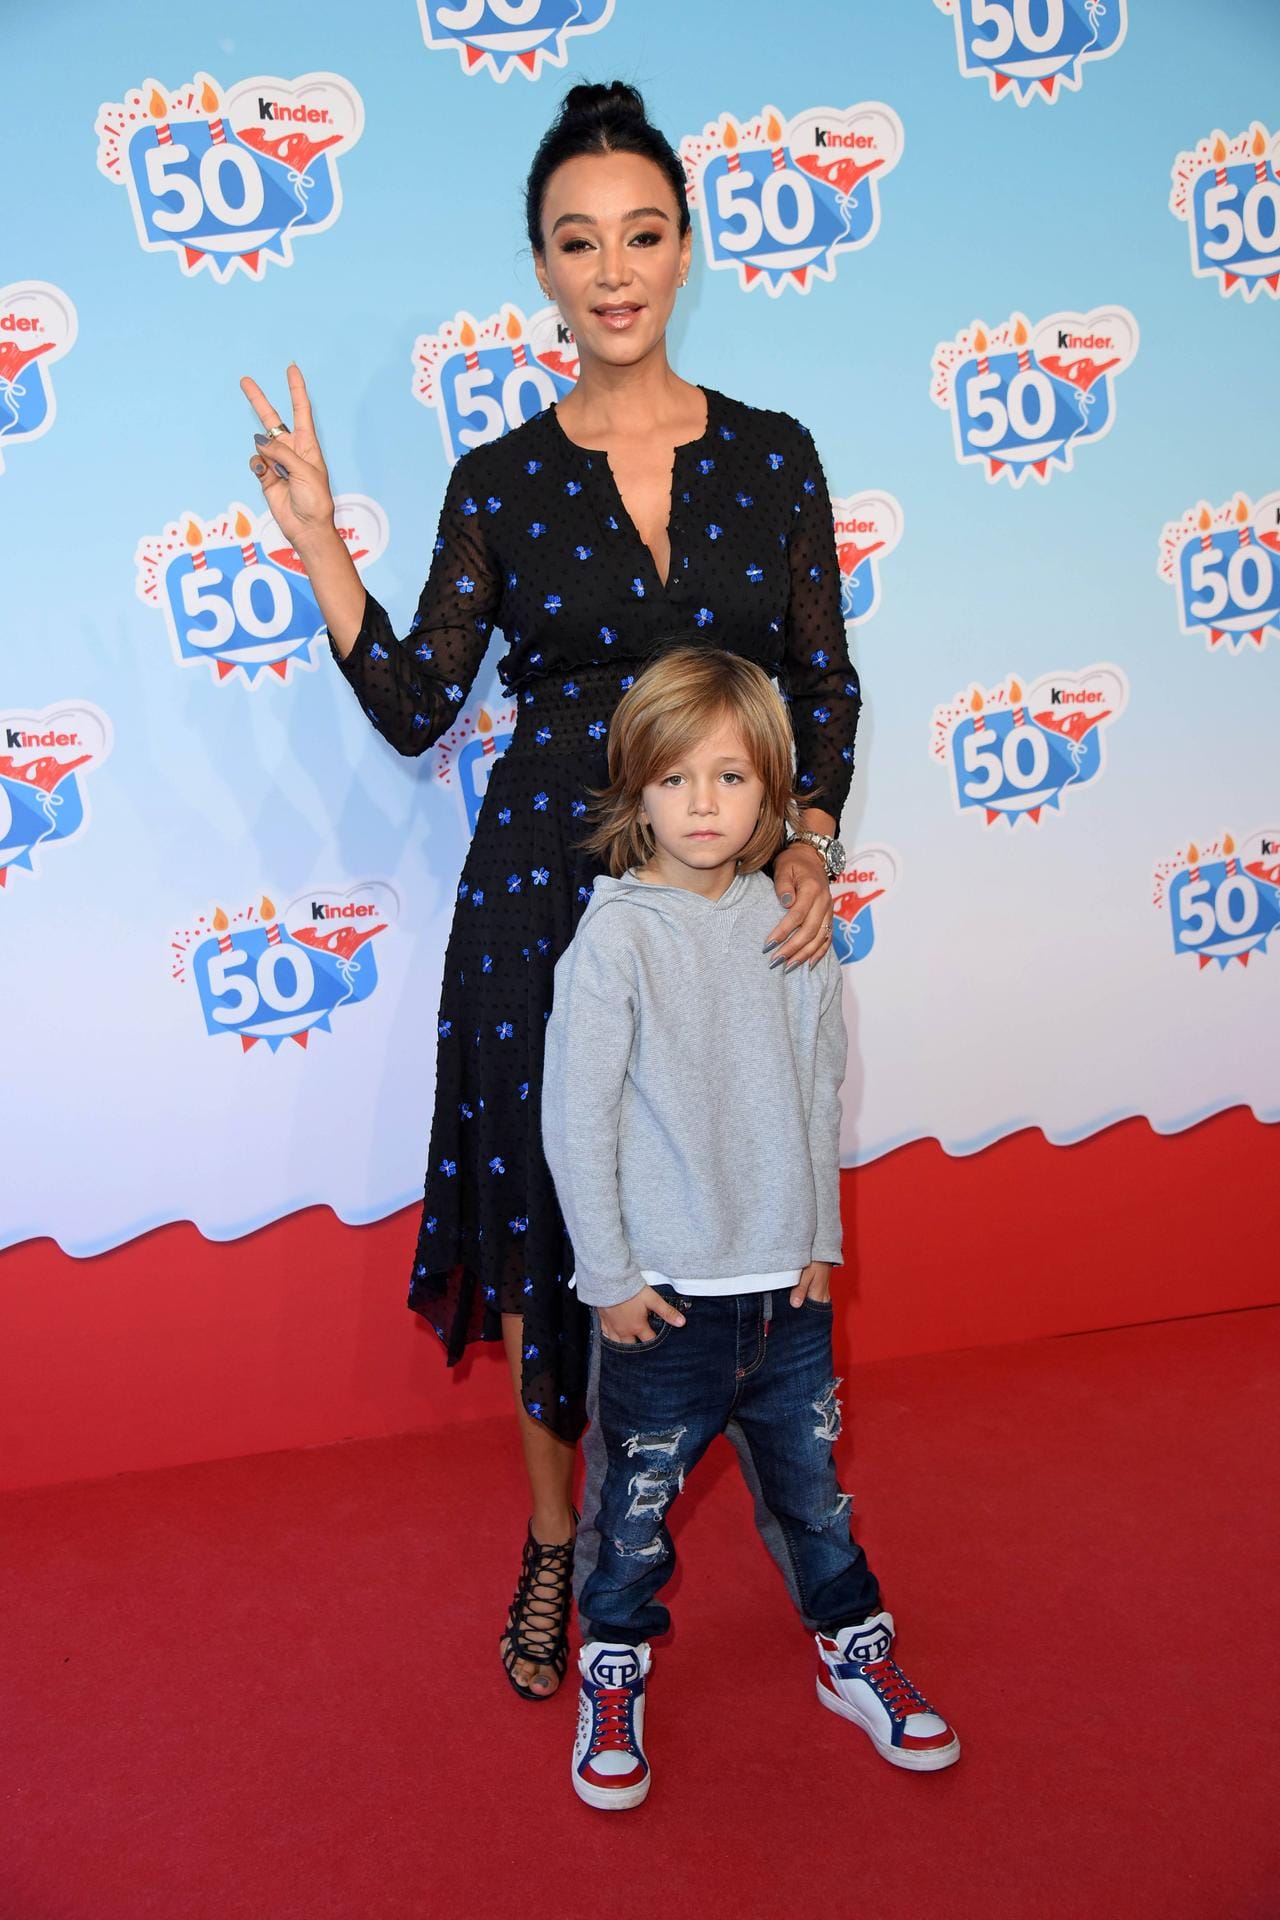 Cooles Doppel: Verona Pooth und ihr jüngster Sohn Rocco posieren gemeinsam.